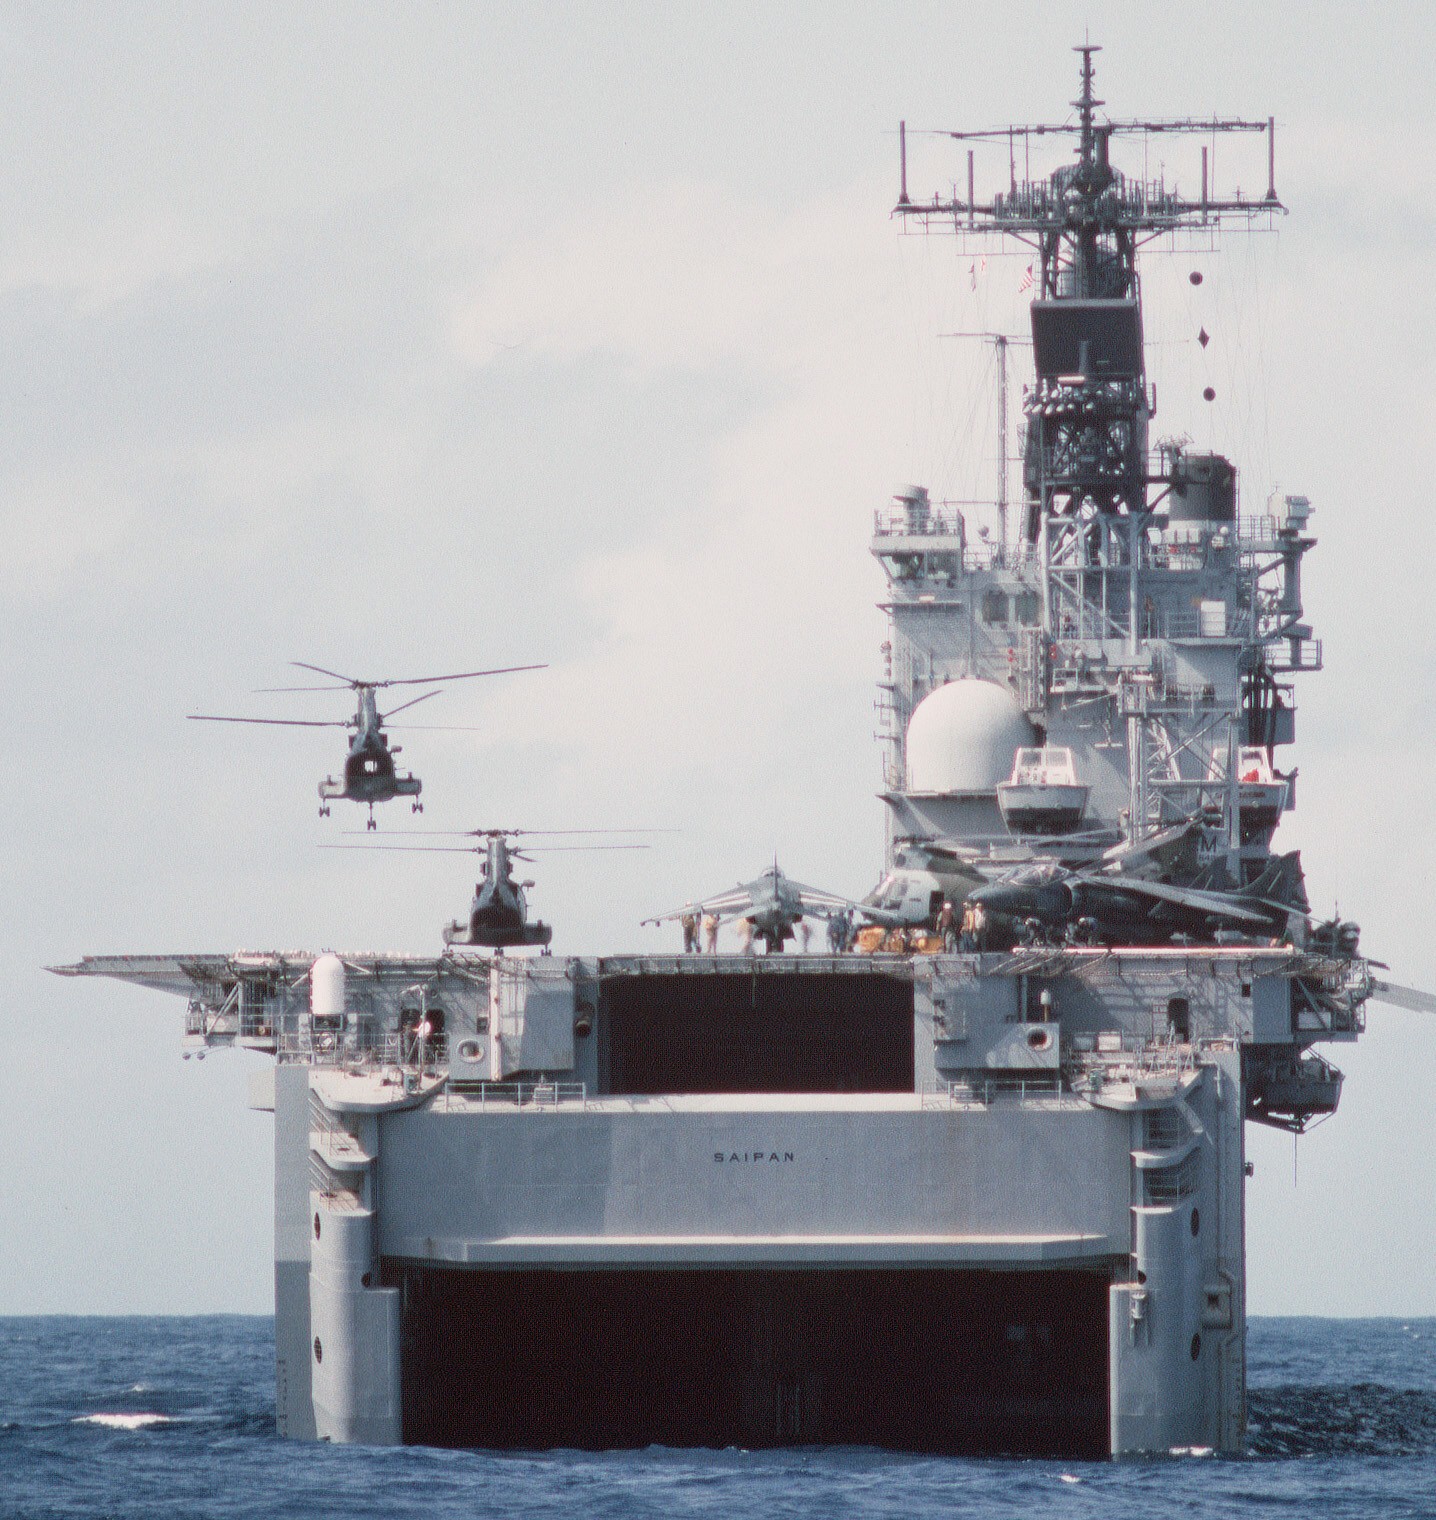 lha-2 uss saipan tarawa class amphibious assault ship us navy 22nd meu hmm-261 usmc operation sharp edge liberia 87